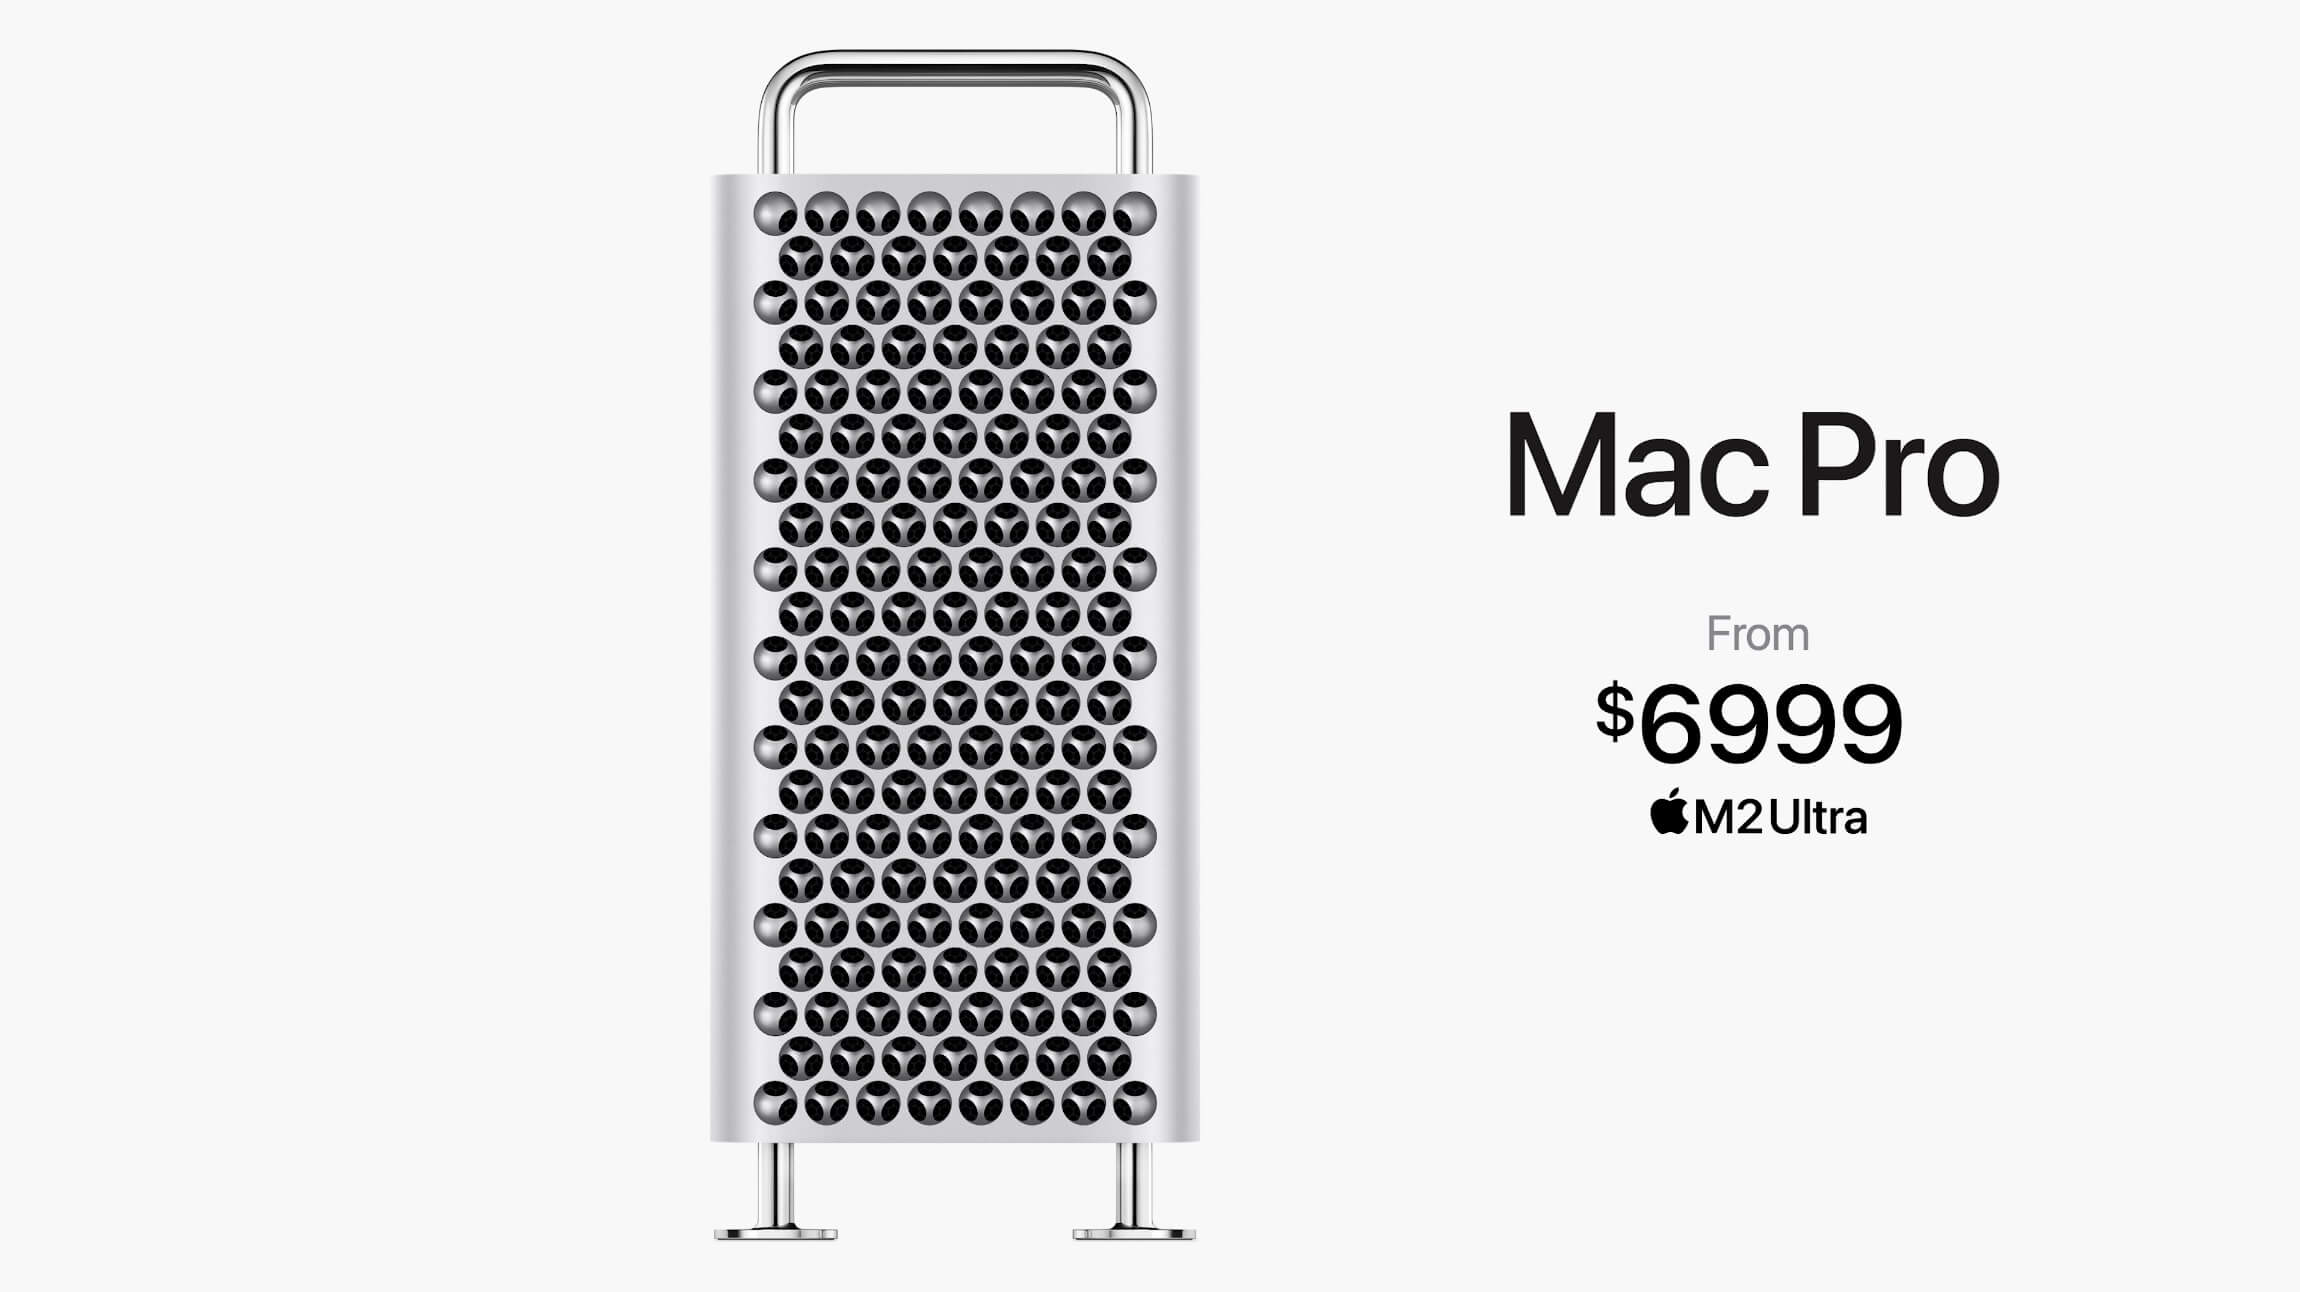 Apple анонсировала Mac Pro с процессором M2 Ultra по цене от $6999